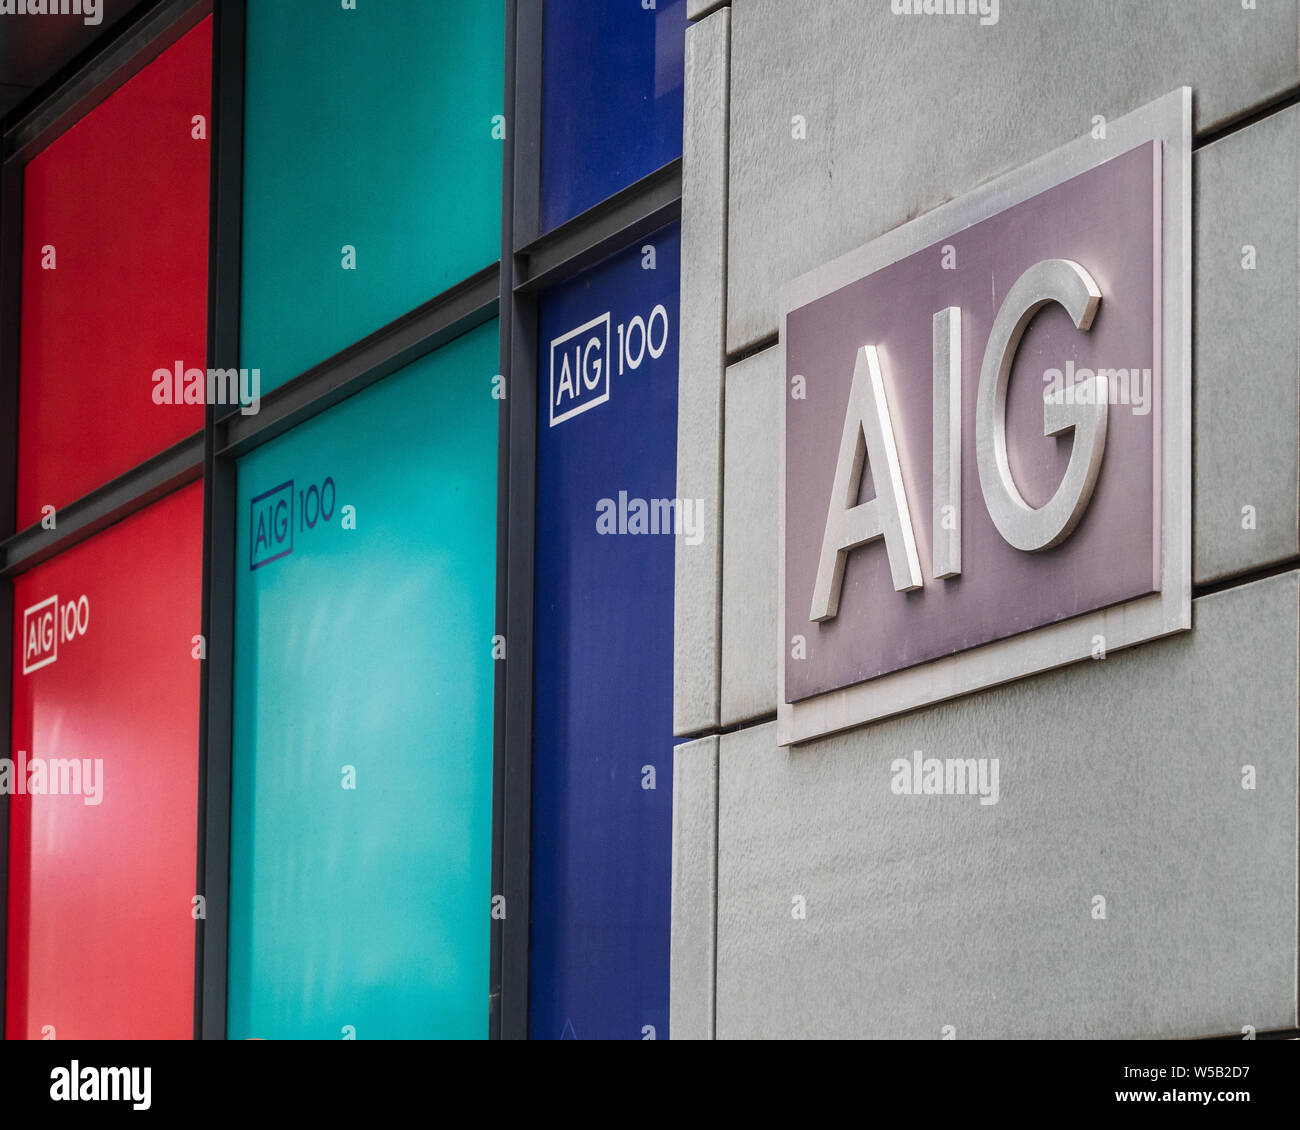 Siège social d'AIG Europe au 58, rue Fenchurch, dans le quartier financier de la ville de Londres. Terminé en 2003, les architectes Kohn Pedersen Fox Associates Banque D'Images